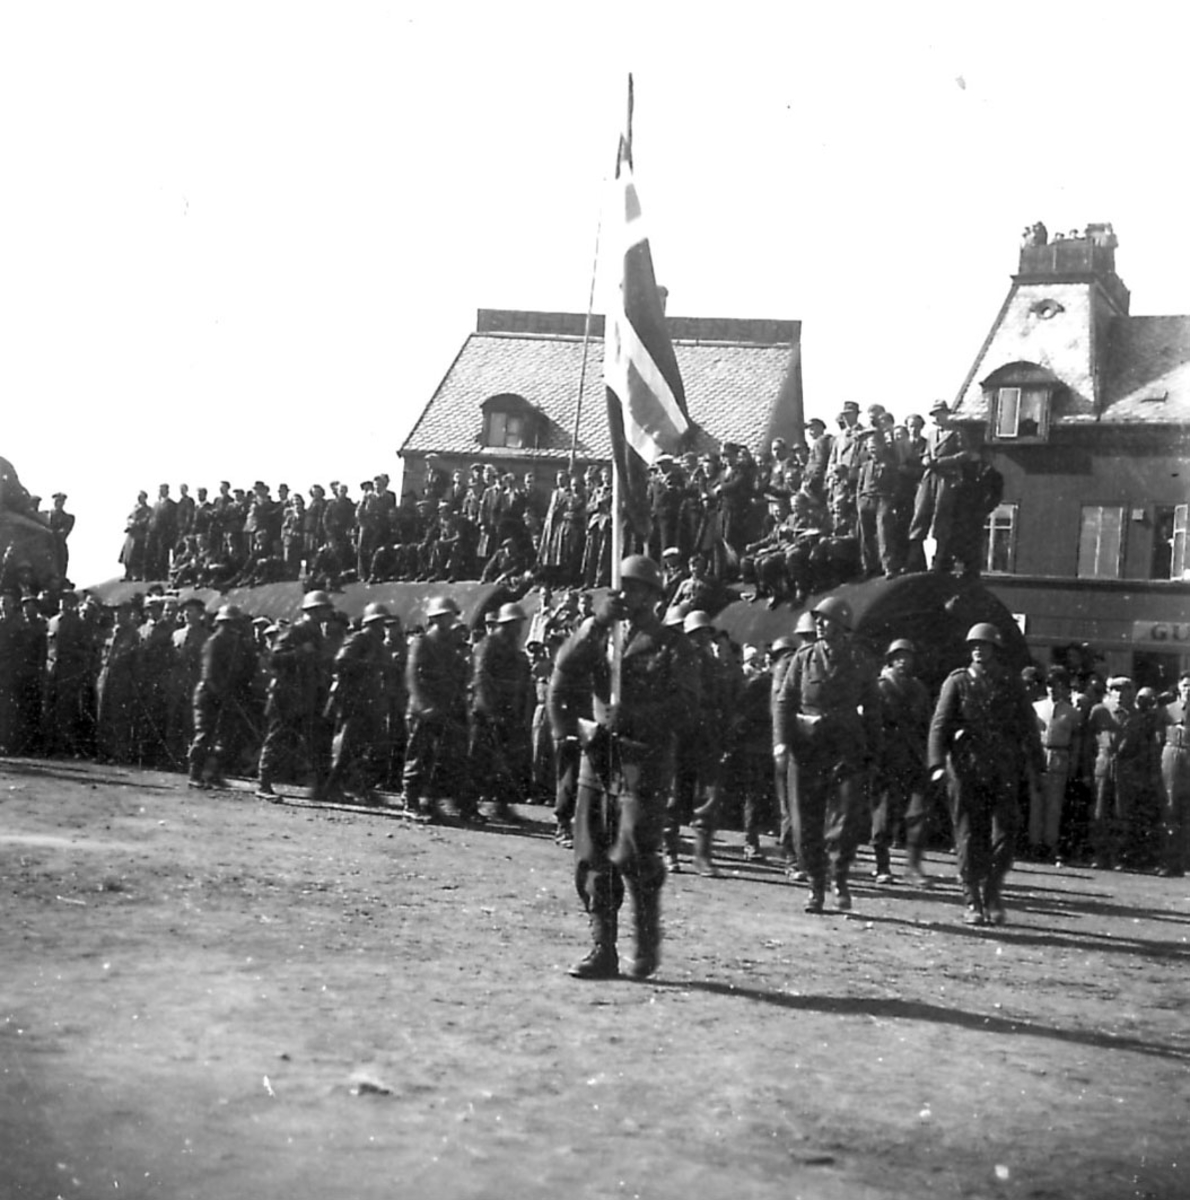 Frigjøringsdagene i Bodø etter krigen 1940 - 1945. Fra kaiområdet, stor sylinderformet "tank" foran noen bygninger. Mange personer samlet på tanken. En gruppe soldater oppstilt foran.